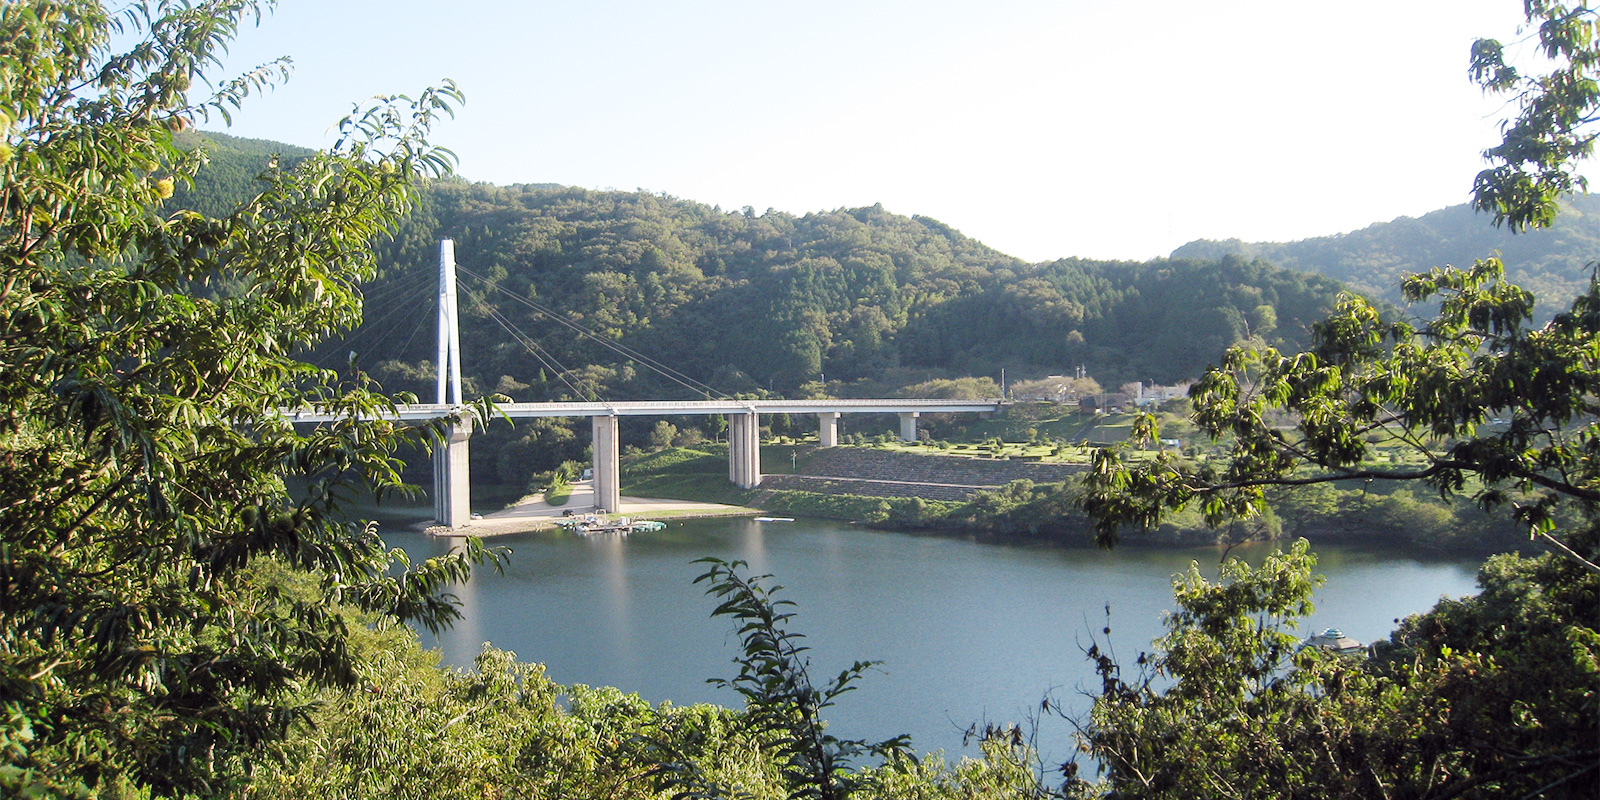 山口県と広島県の県境にかかる弥栄大橋は、地元のシンボルです